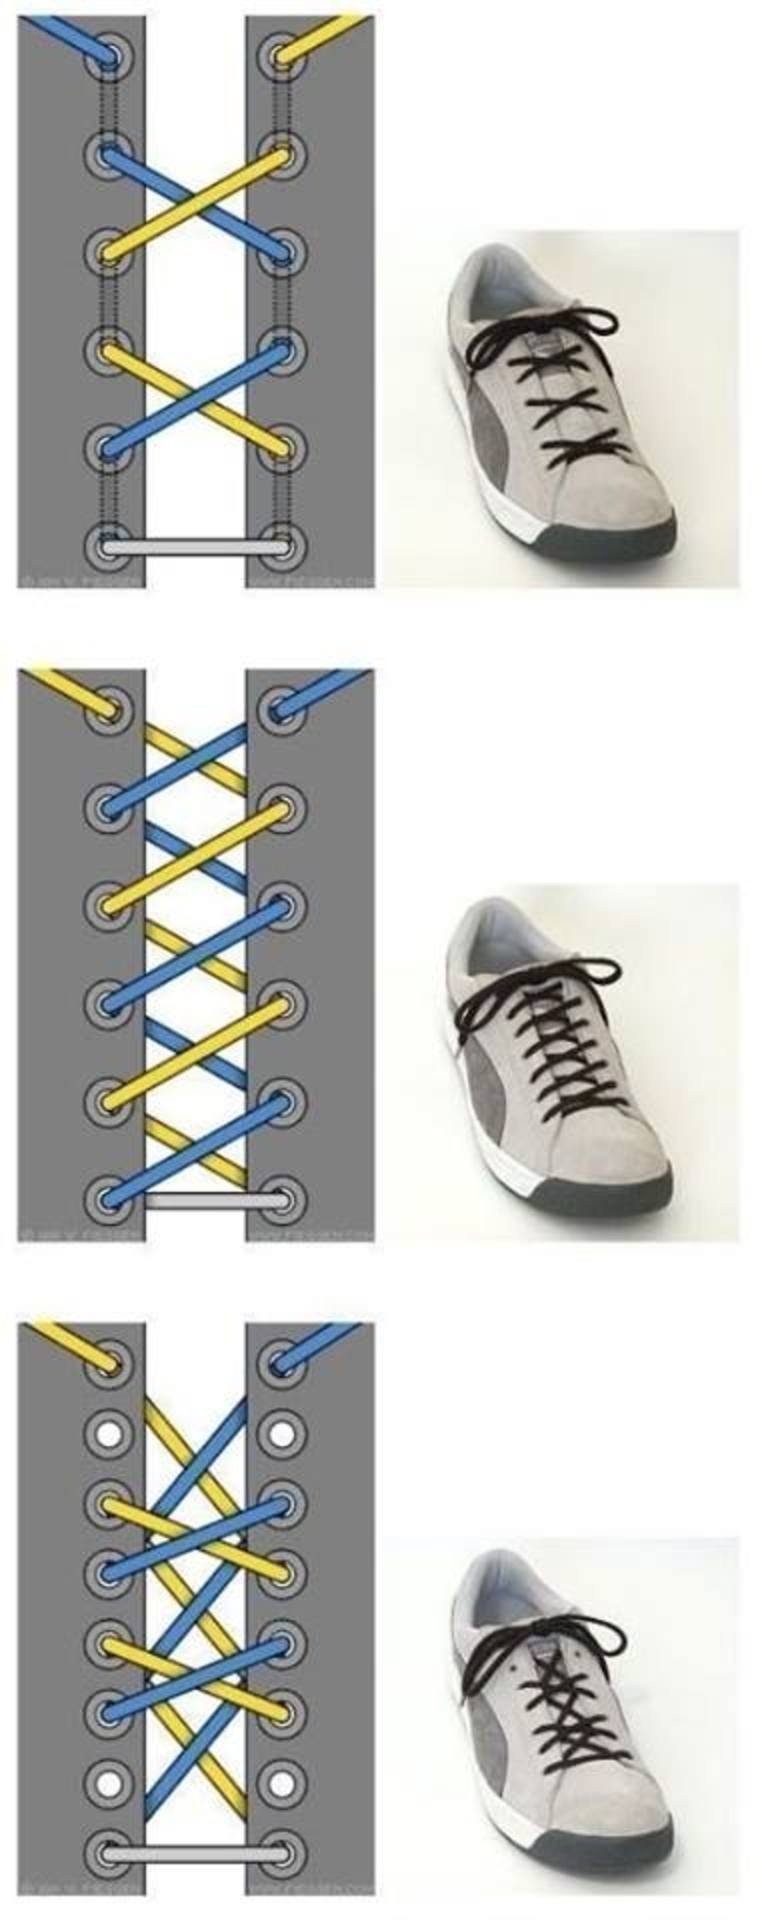 Как завязать шнурки чтобы не было видно. Типы шнурования шнурков на 6 отверстий. Схема завязывания шнурков на кроссовках. Красиво зашнуровать шнурки на кроссовках 5 дырок. Способы зашнуровать кроссовки 5 дырок схема.